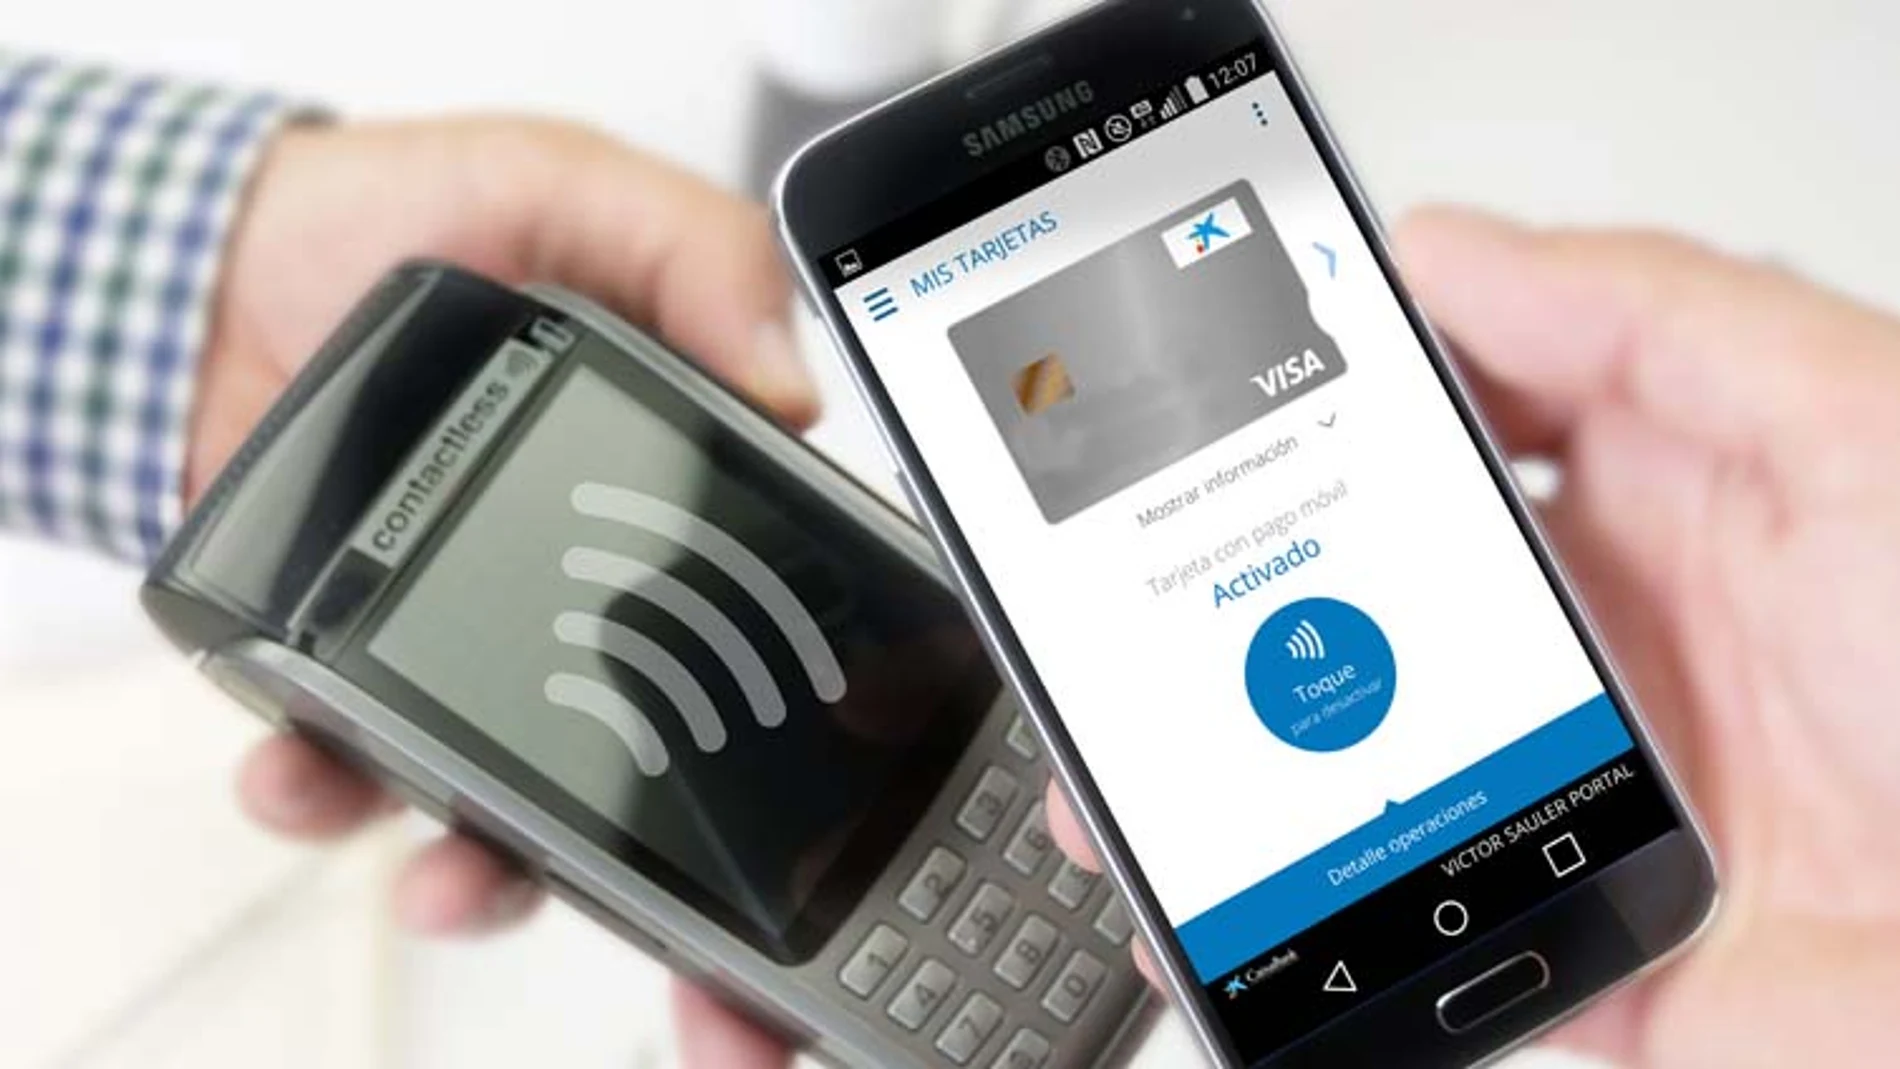 El pago con el móvil sigue creciendo en número de usuarios, según el estudio de EGMobile.